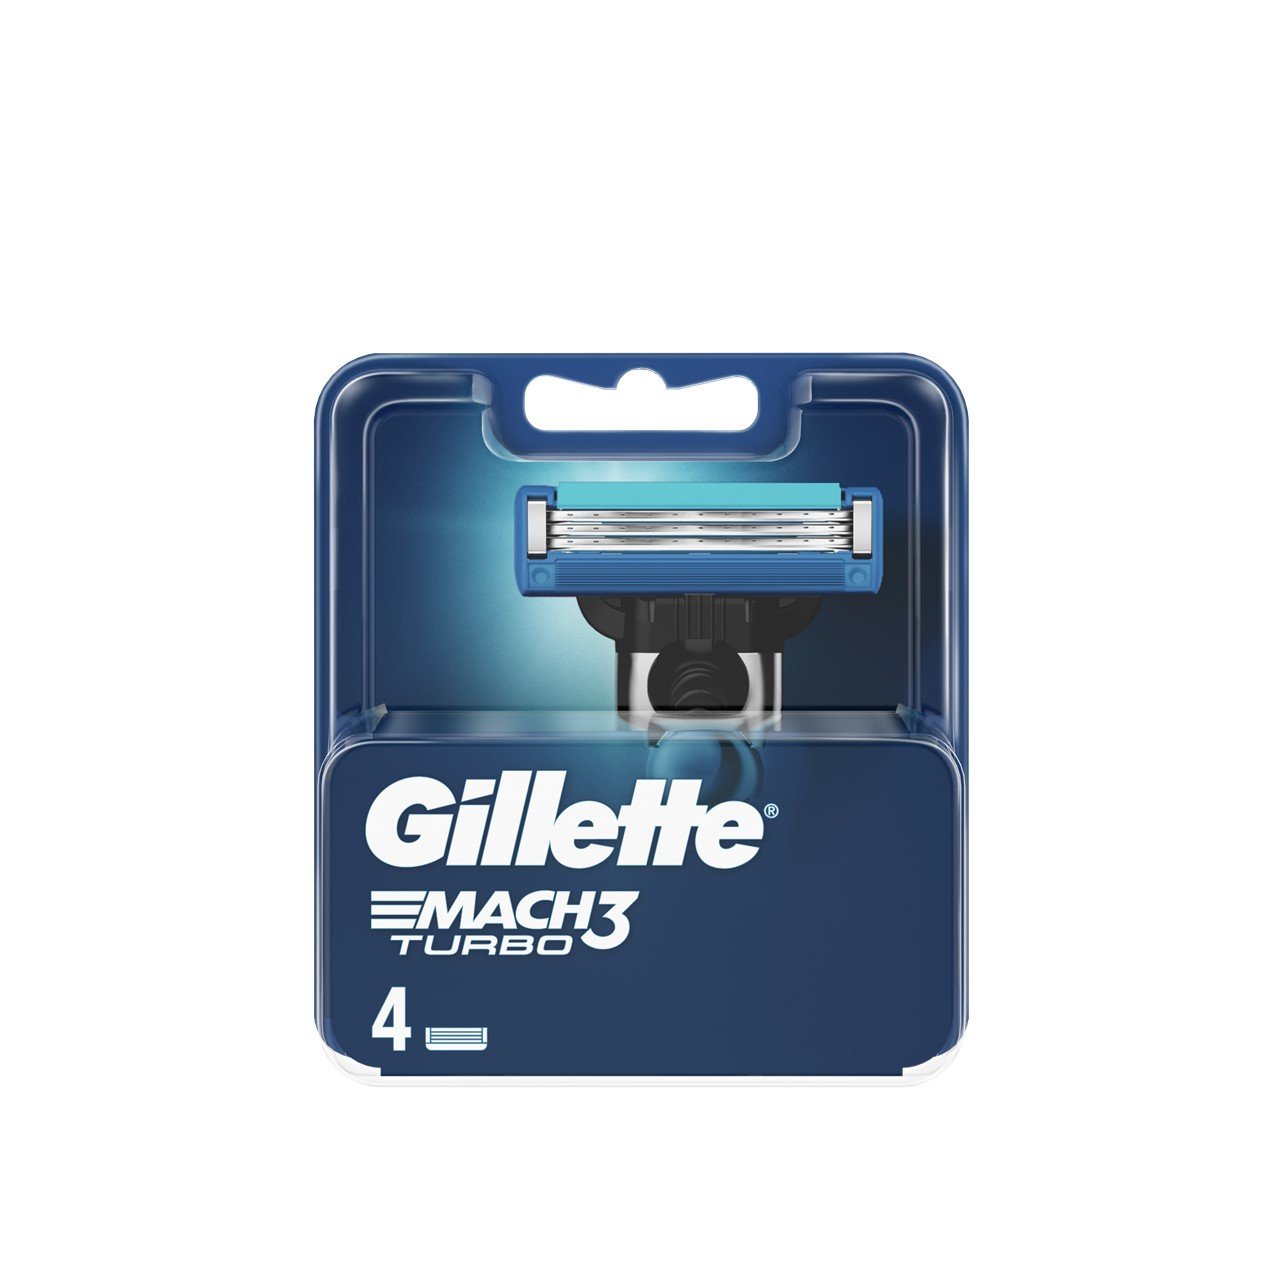 Gillette Mach3 Turbo Replacement Razor Blades x4